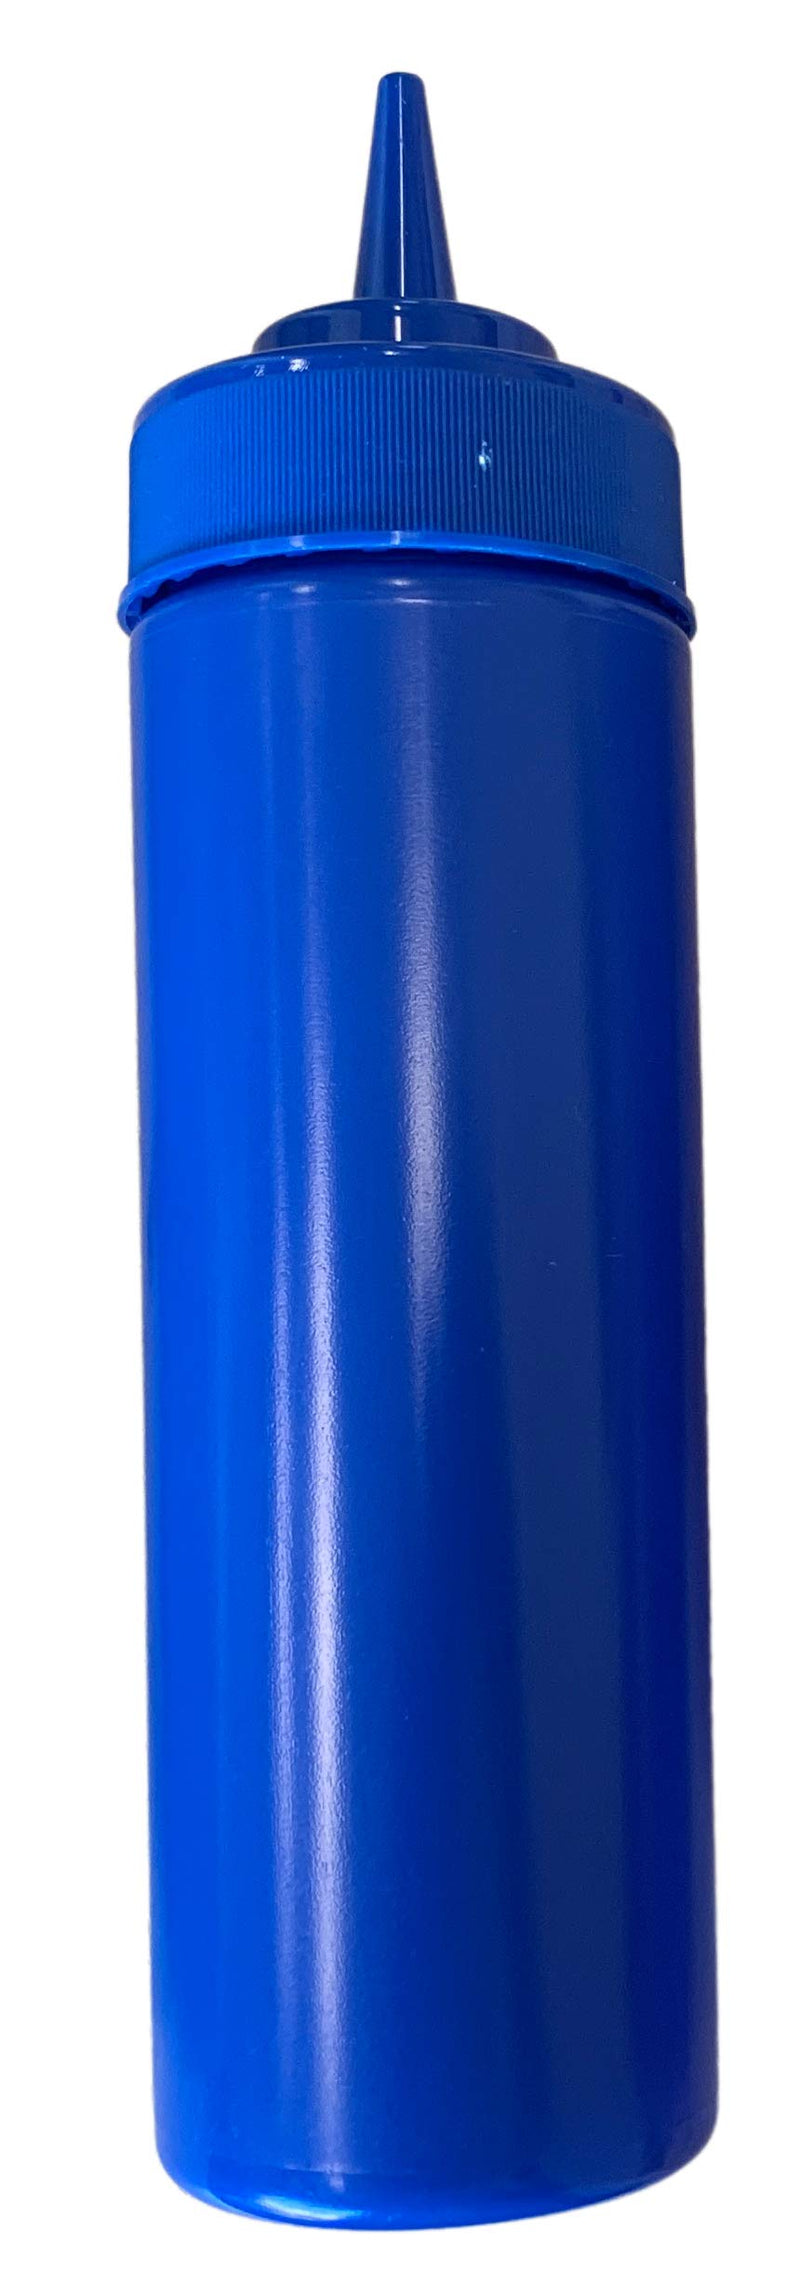 [Australia - AusPower] - BPA Free Food Prep 12 oz Plastic Condiment Squeeze Bottle for Hot Sauces Condiments Dressings (blue) blue 